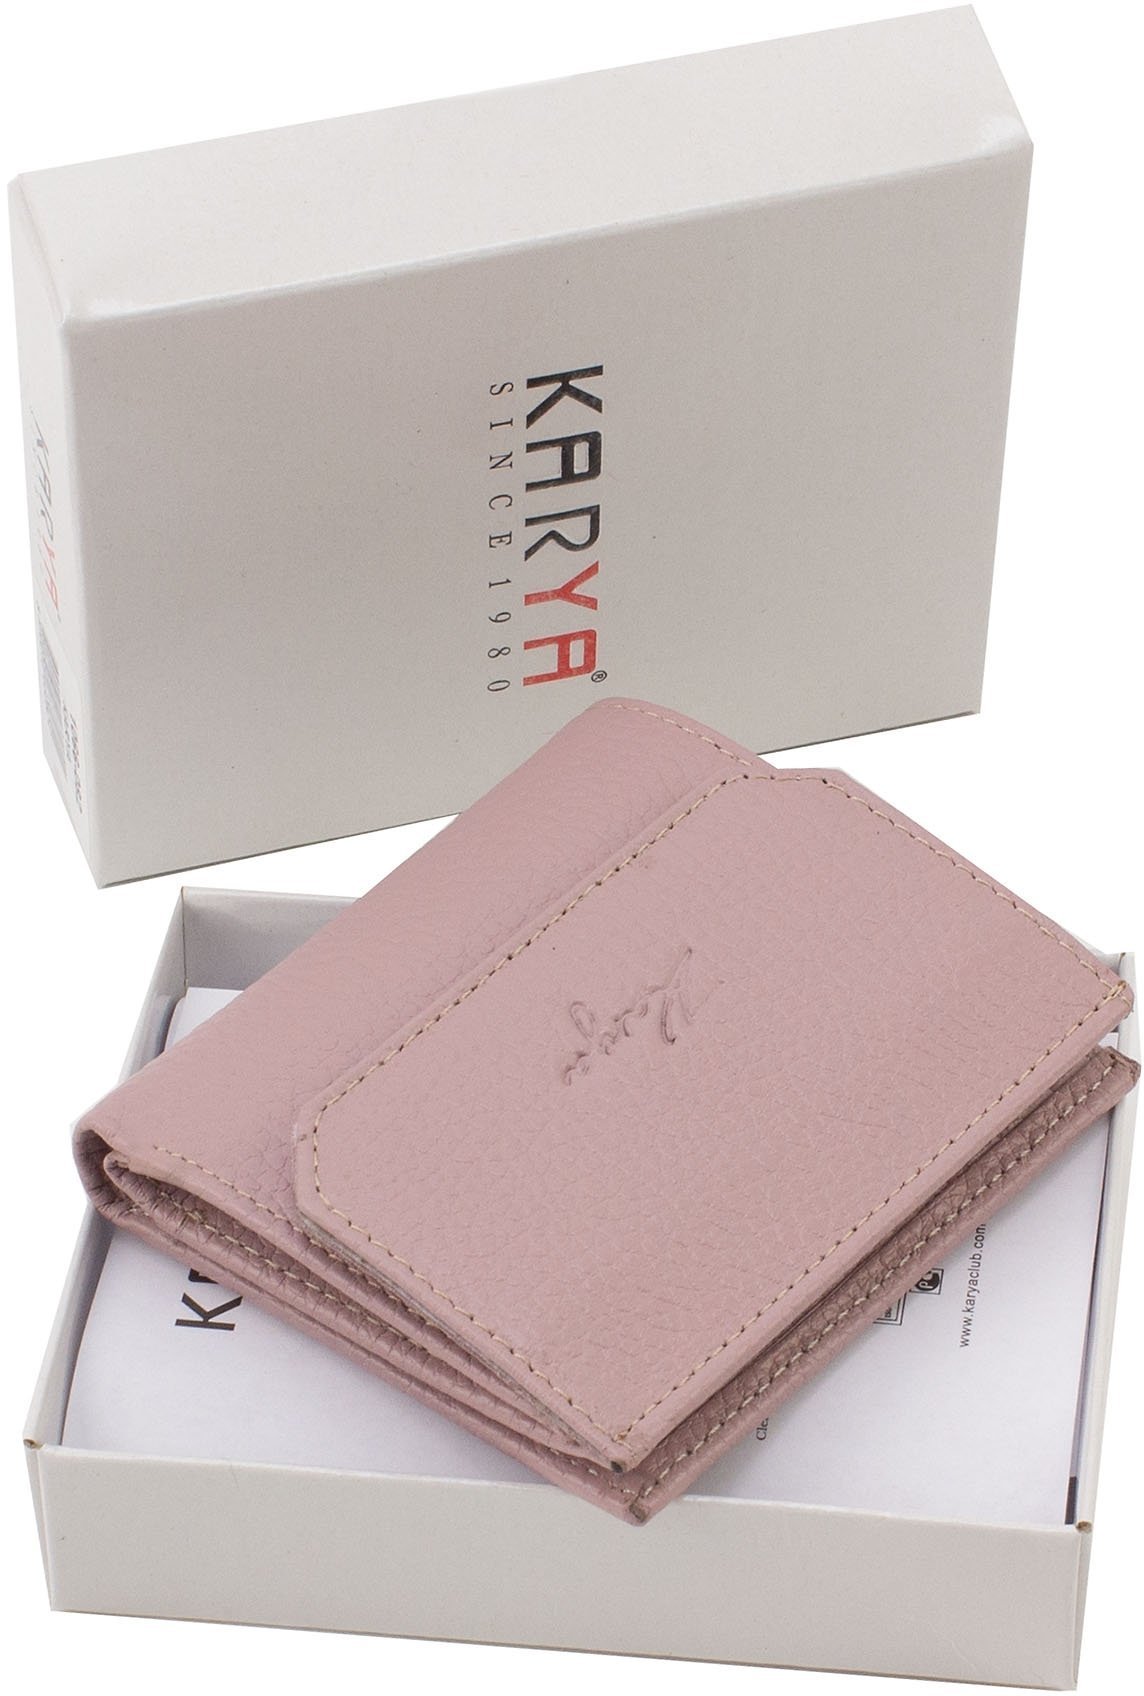 Темно-розовый женский кошелек из натуральной кожи с фиксацией на кнопку KARYA (19839)